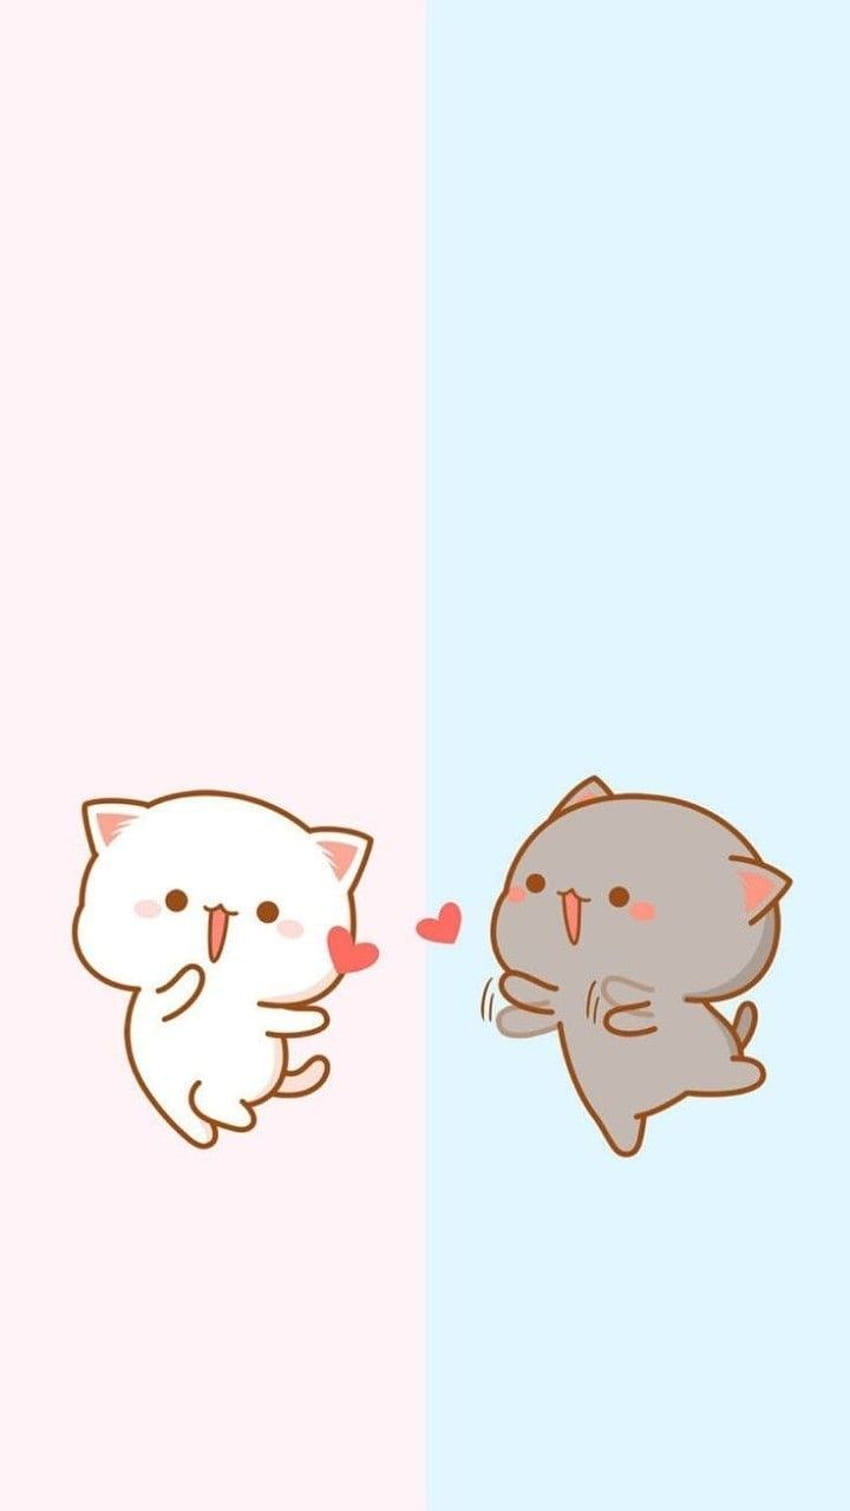 Nếu bạn là fan của văn hóa Mèo Kawaii, thì không thể bỏ qua những bức ảnh đáng yêu này. Hãy xem hình ảnh và cảm nhận sự đáng yêu của những chú mèo Kawaii trên màn hình của bạn.